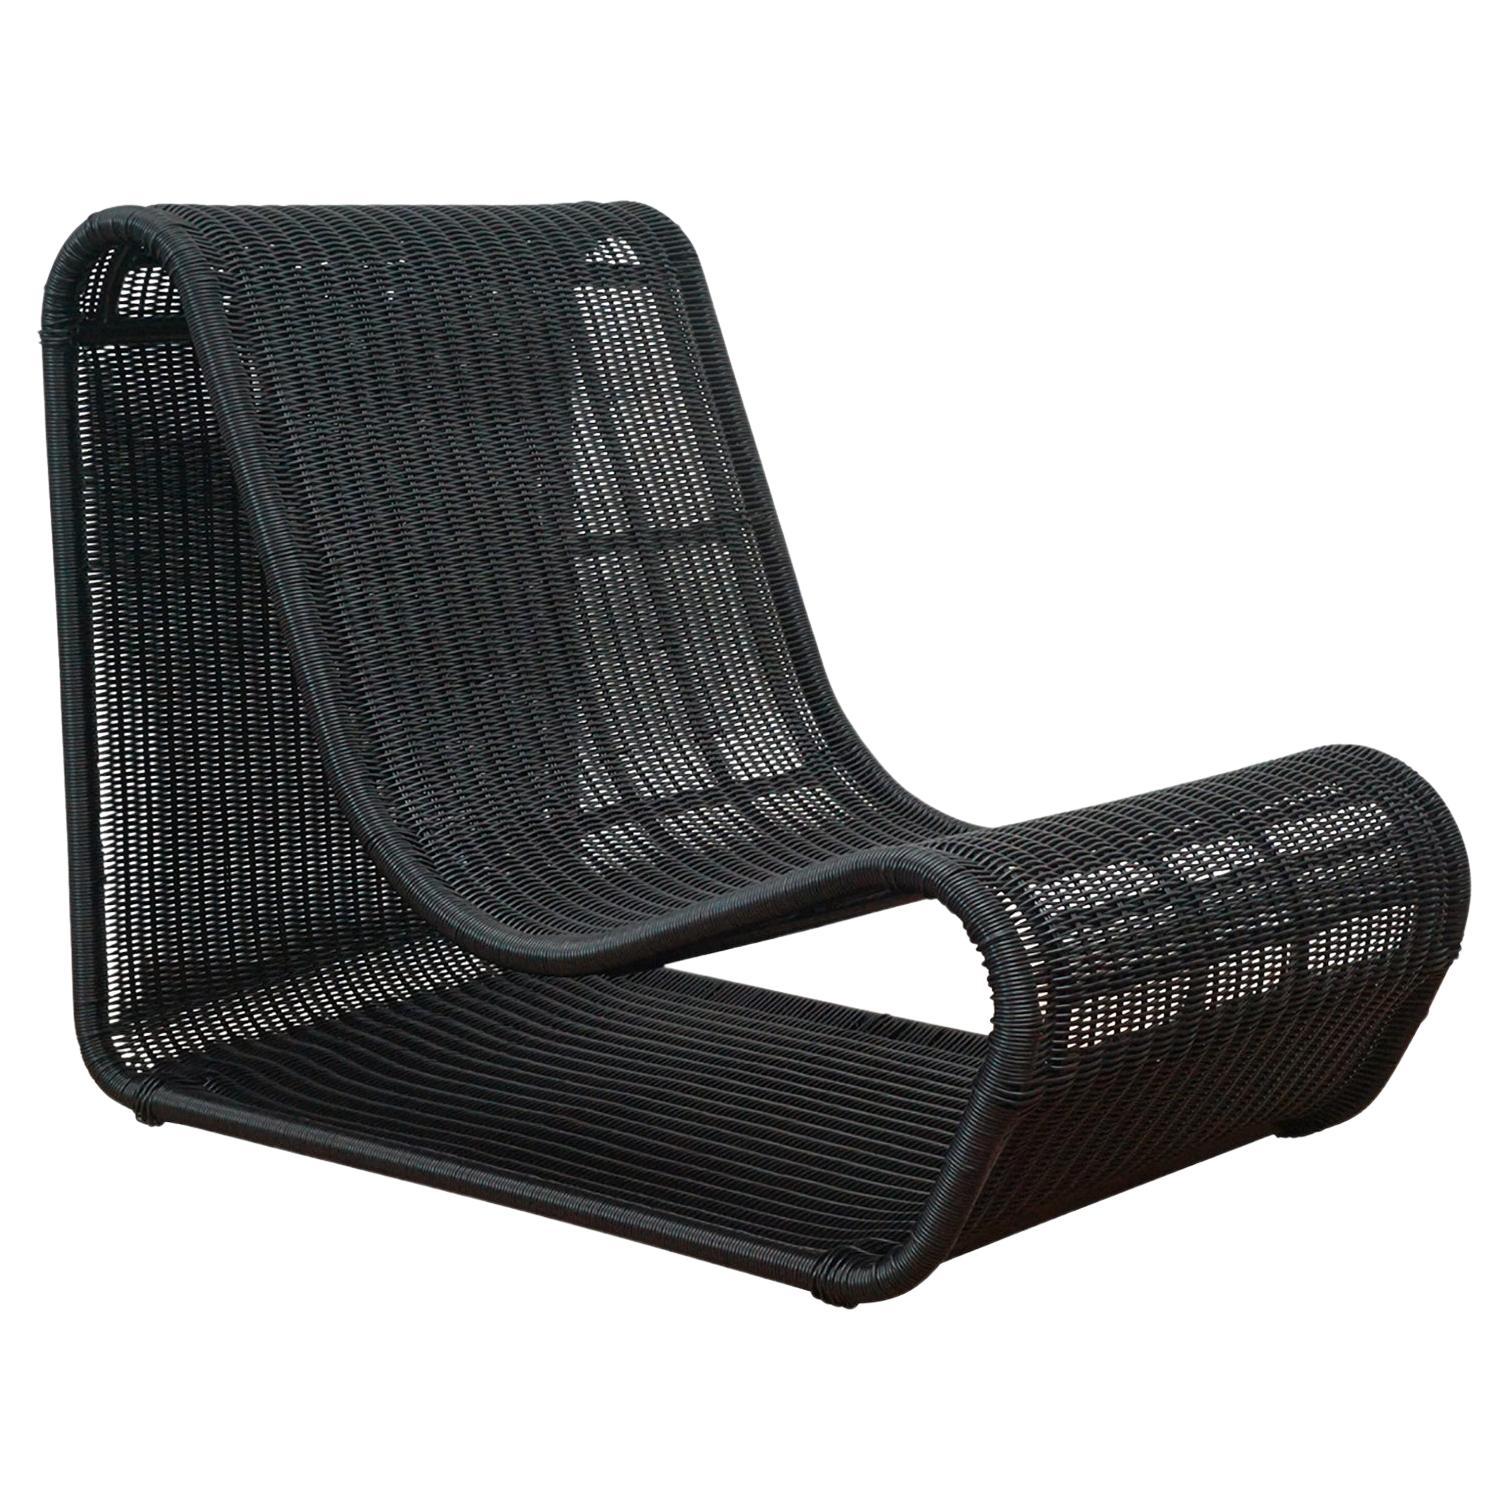 Nos chaises longues d'extérieur Esperanza sont conçues pour le style, le confort et la durabilité. Inspirée de la chaise Looping classique de Willy Guhl, la chaise longue d'extérieur Esperanza est construite avec un cadre métallique durable et